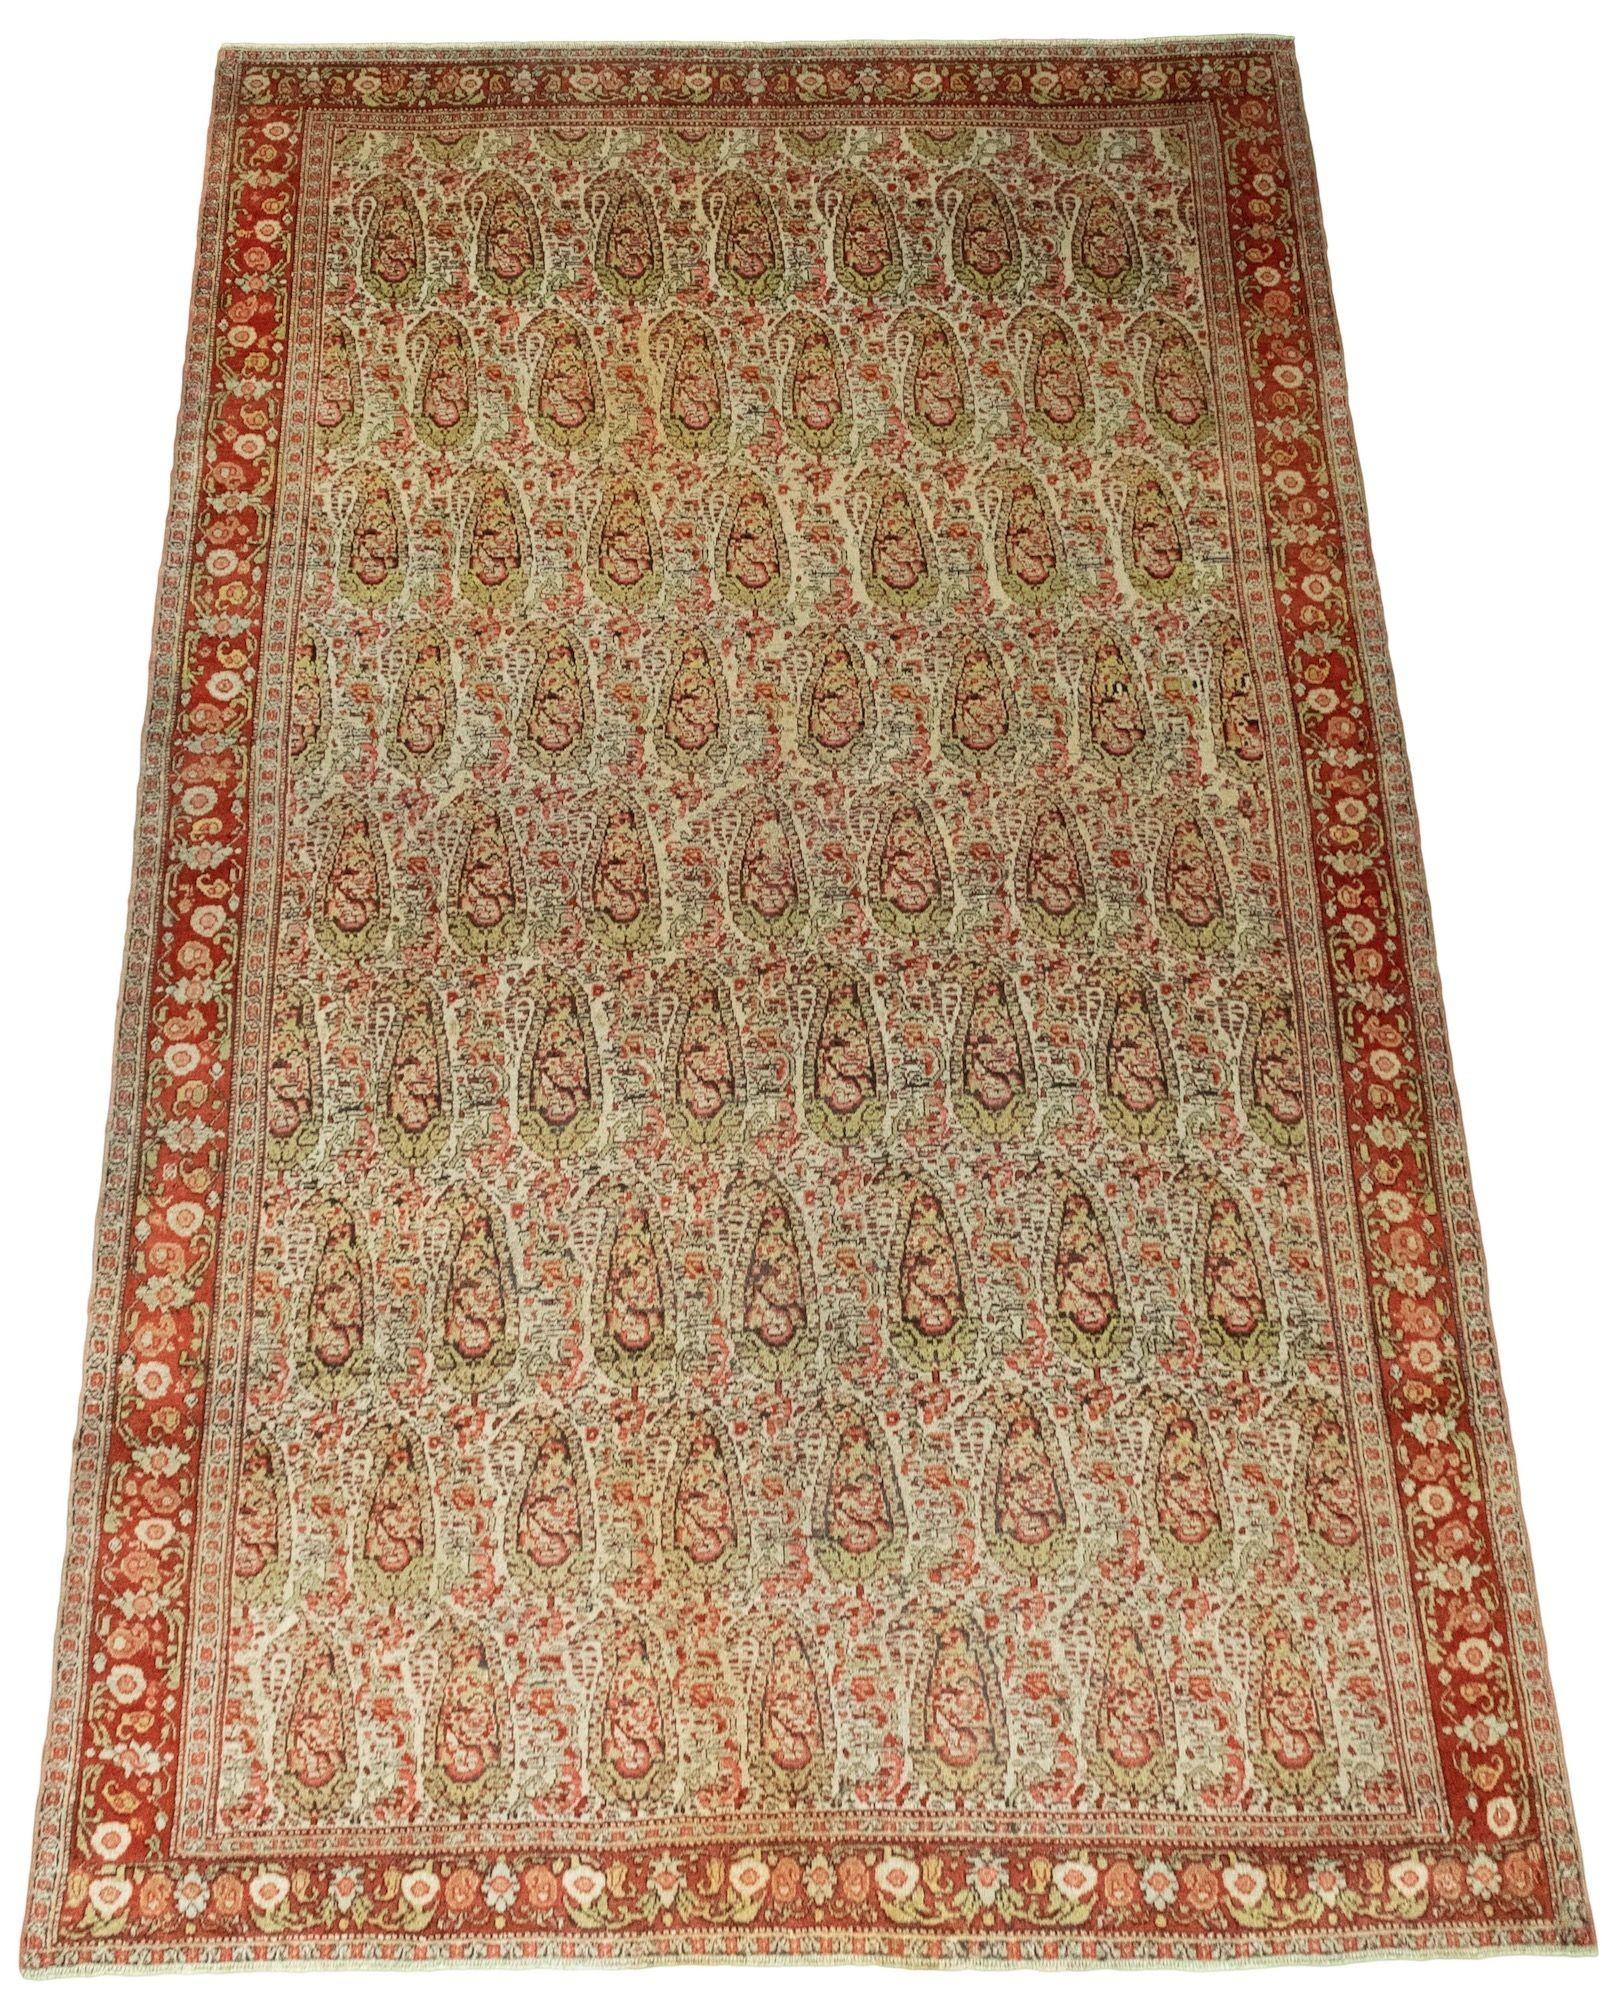 Ein wunderschöner antiker Senneh-Teppich, handgewebt um 1900 mit einem ganzflächigen Boteh-Muster auf einem elfenbeinfarbenen Feld und einer Terrakotta-Bordüre. Sehr fein gewebt, mit wunderbaren Sekundärfarben in Grün- und Rosatönen, ein sehr